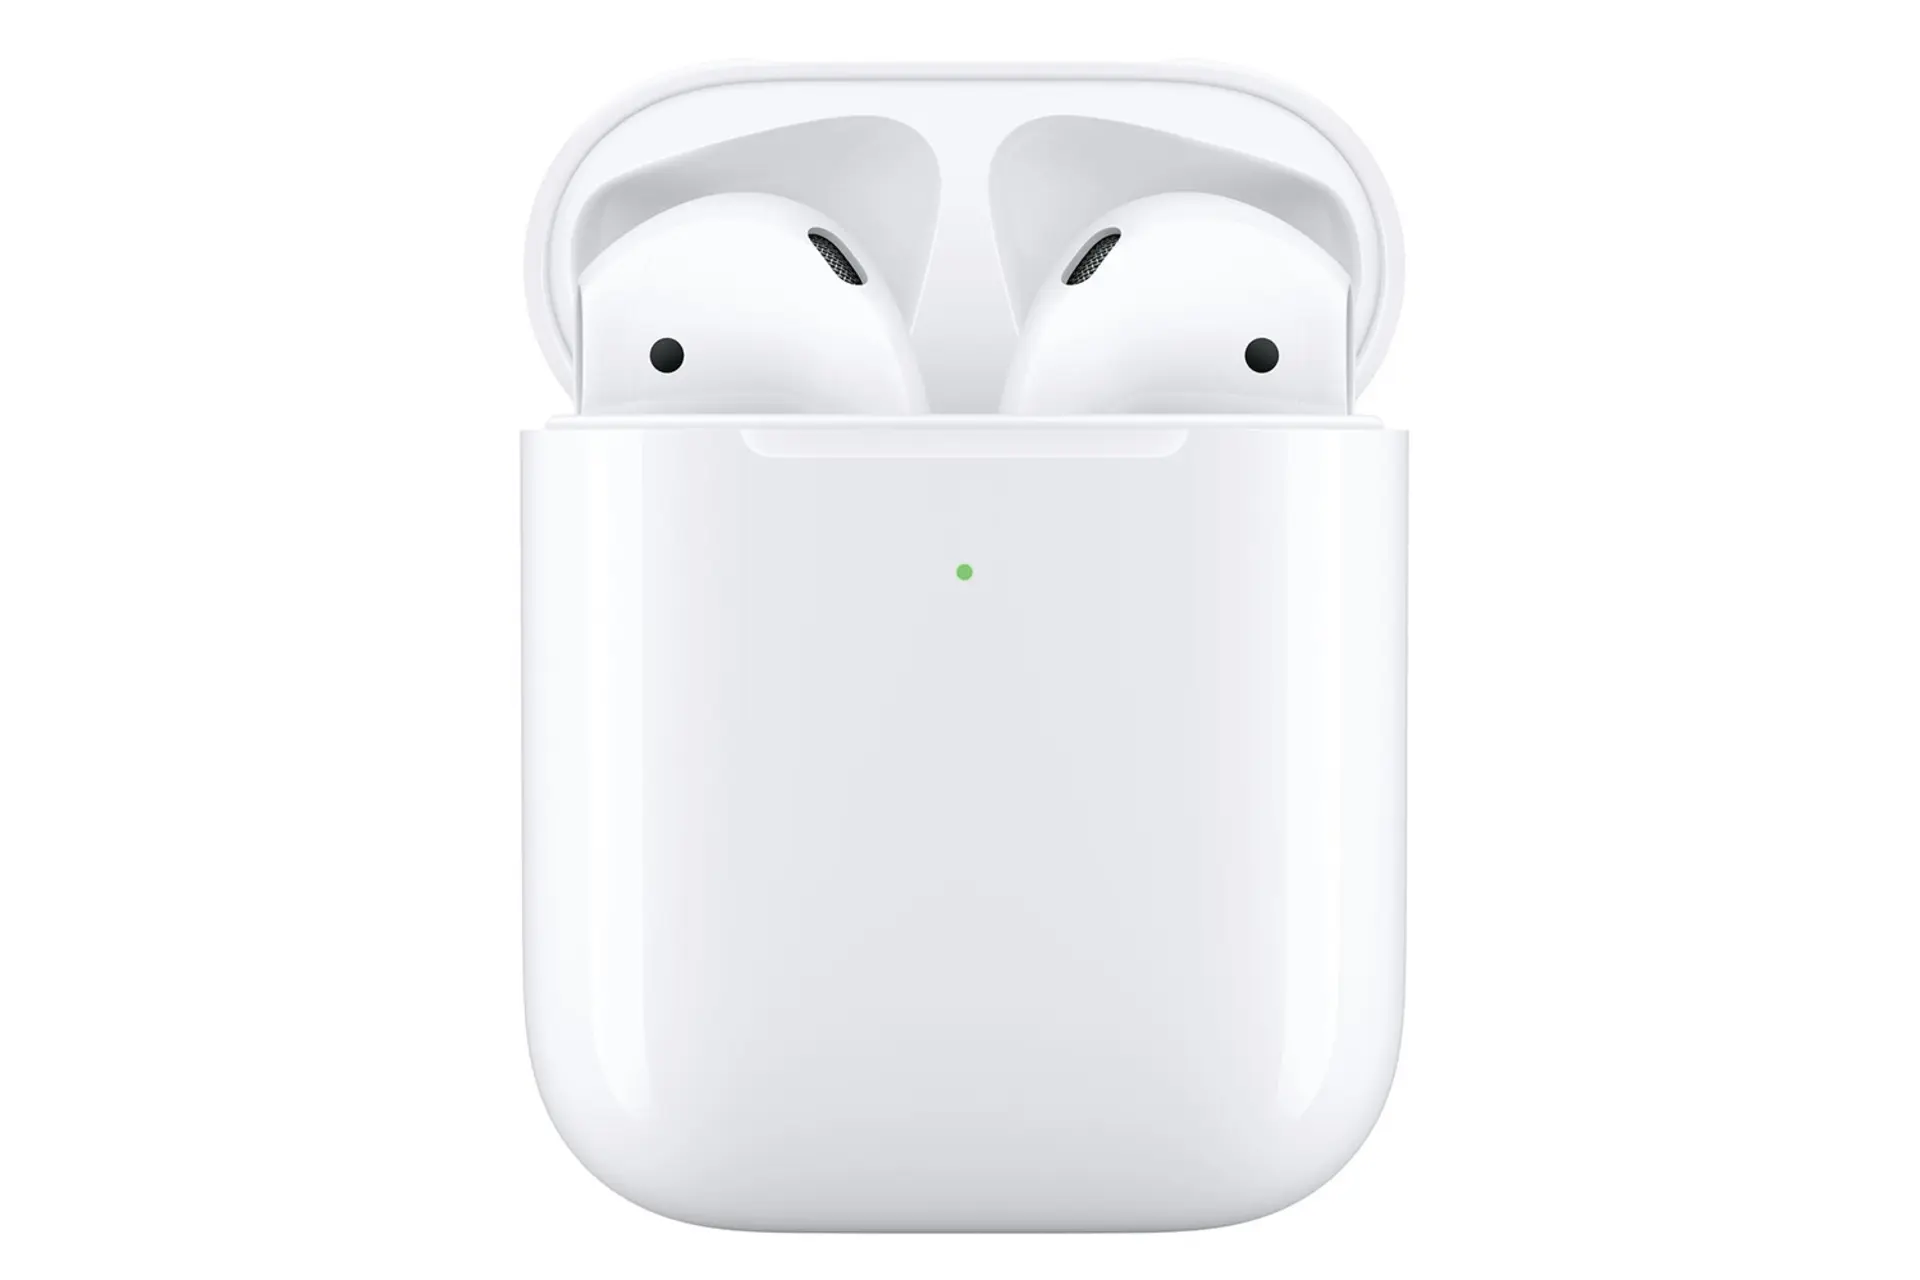 اپل ایرپادز نسل دوم / Apple AirPods 2nd Gen درون کیس و چراغ شارژ